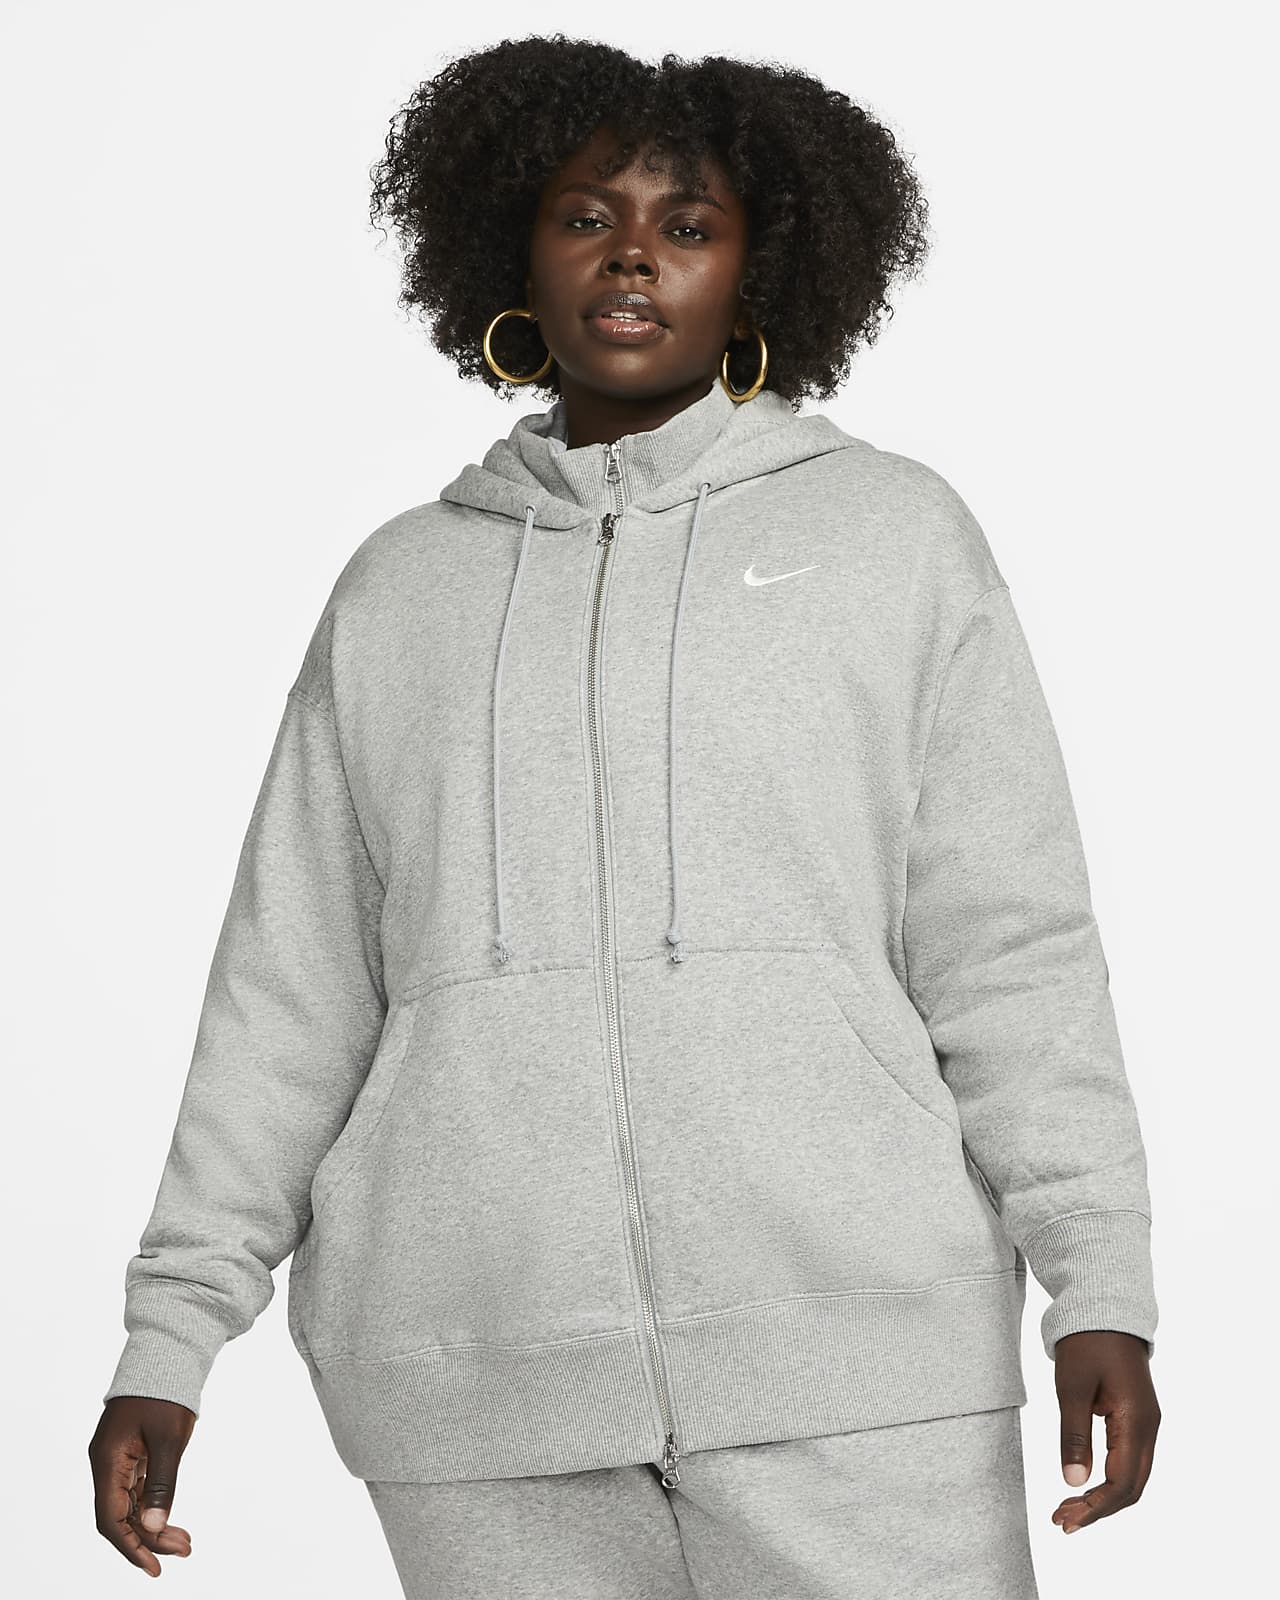 Grey Hoodies. Nike CA